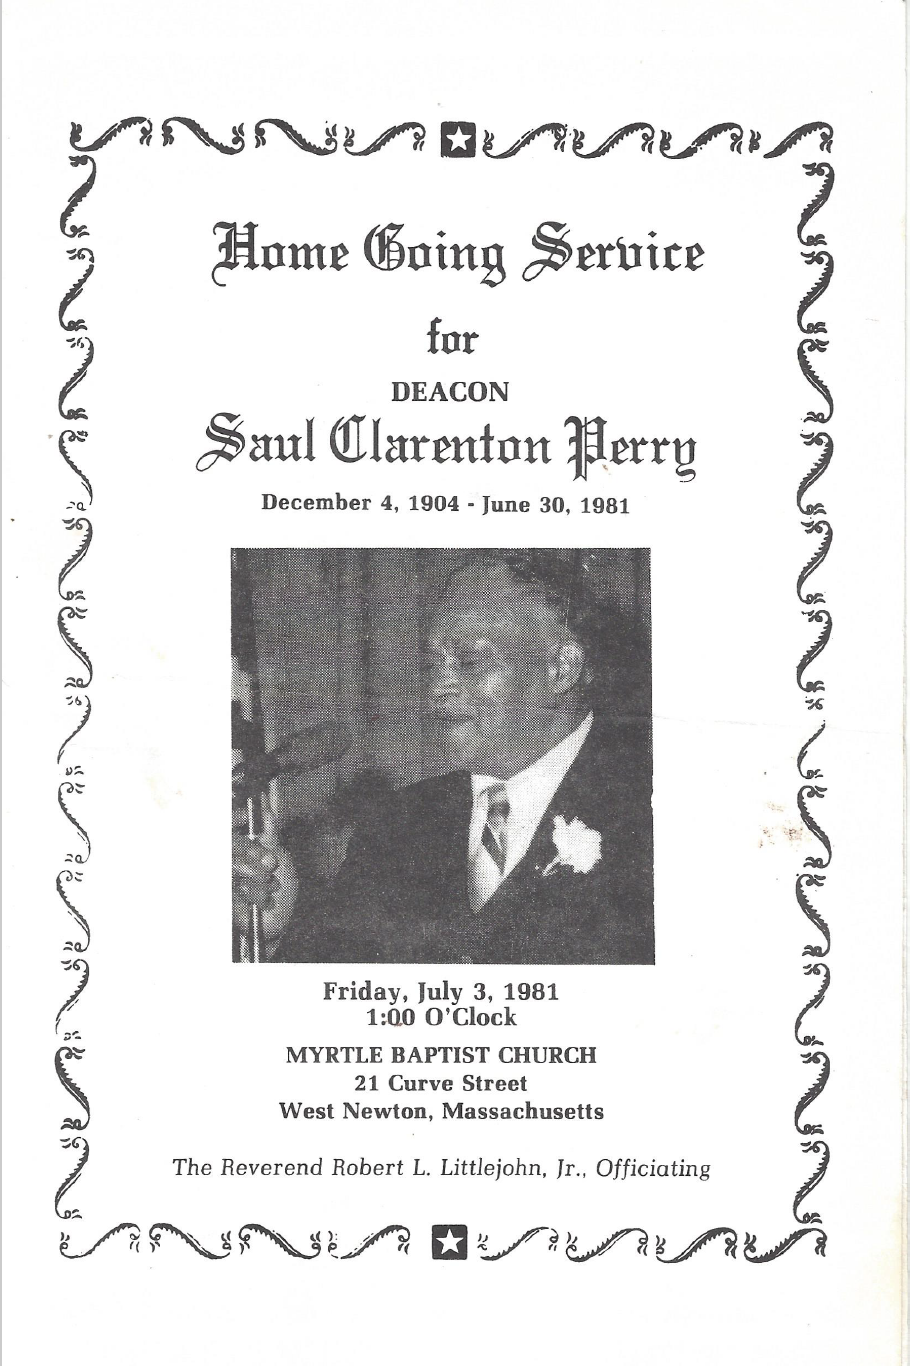 Deacon Saul Clarenton Perry Funeral Program